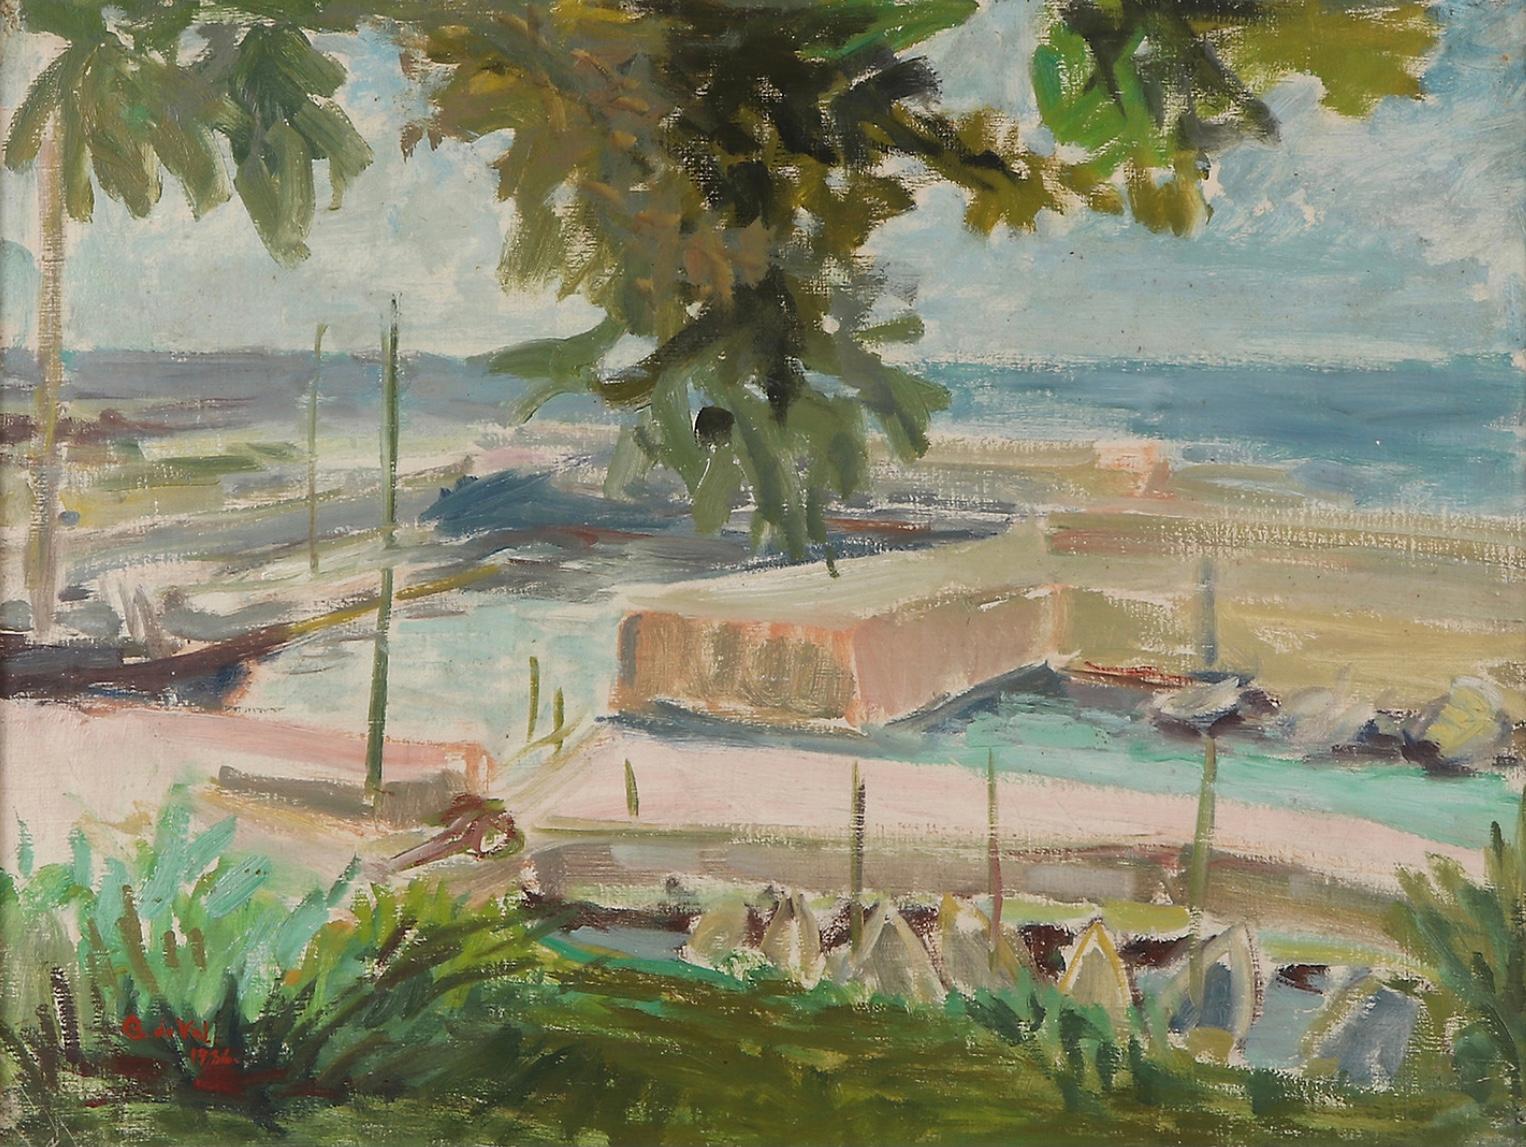 Charmante huile sur toile encadrée d'une marina française par l'artiste suédoise Gertrude de Val, datée de 1936.
Peint dans des tons bleus et verts, il offre une vue sur le port de plaisance et la mer depuis l'ombre d'un olivier.
L'artiste a